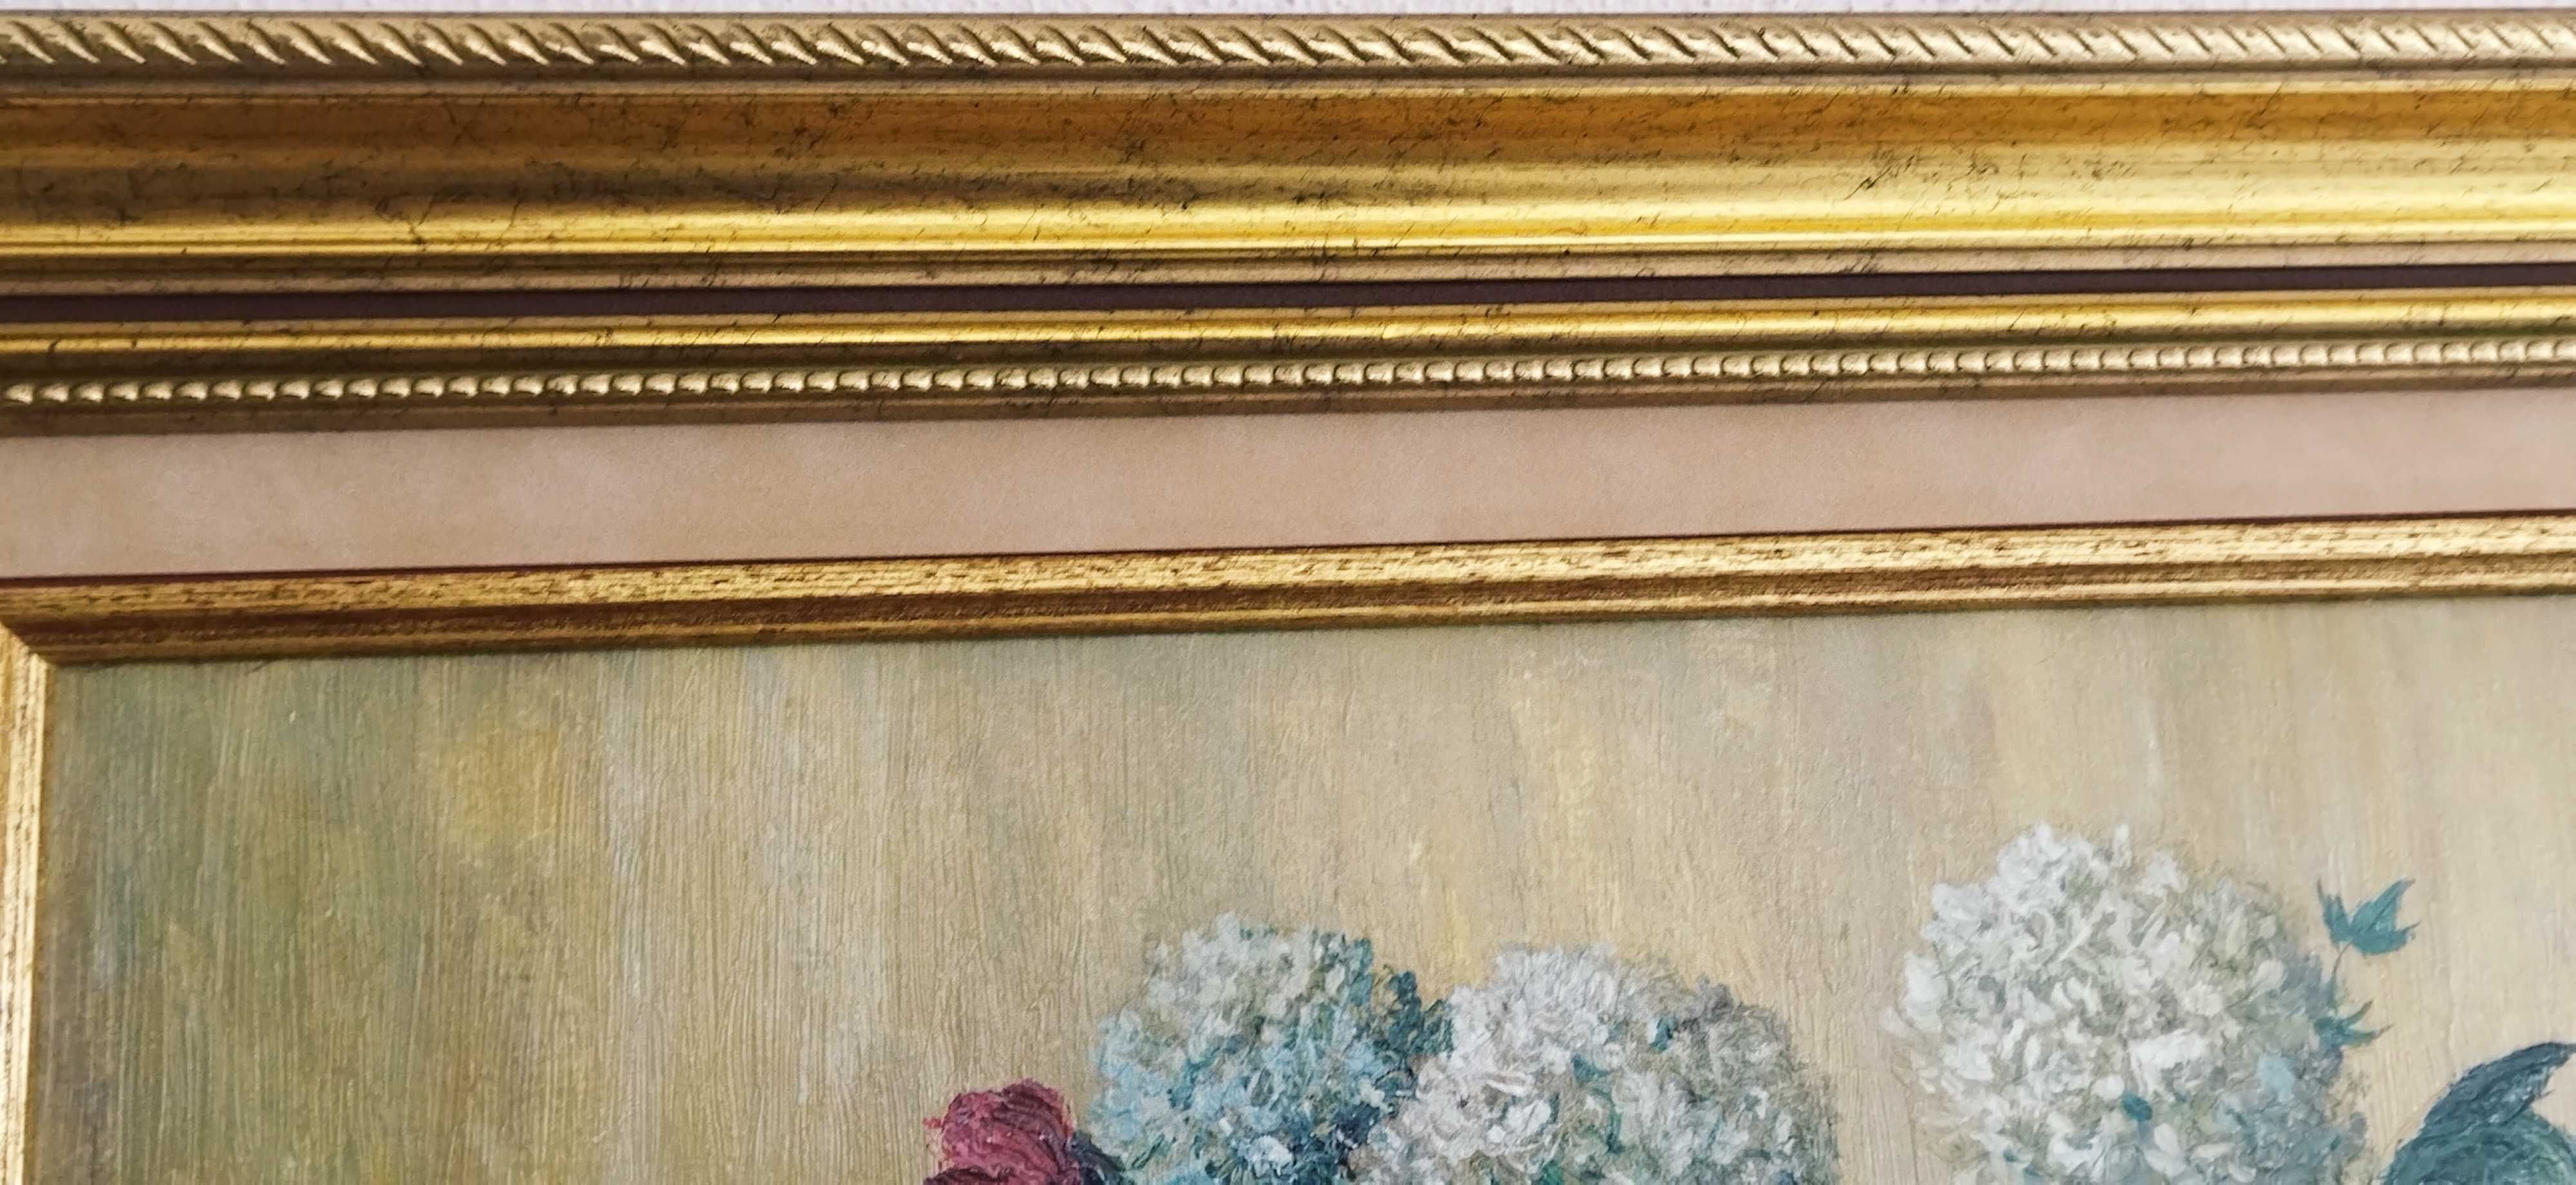 Картина. Букет цветов.Холст,масло,подпись.67×57 см.Франция